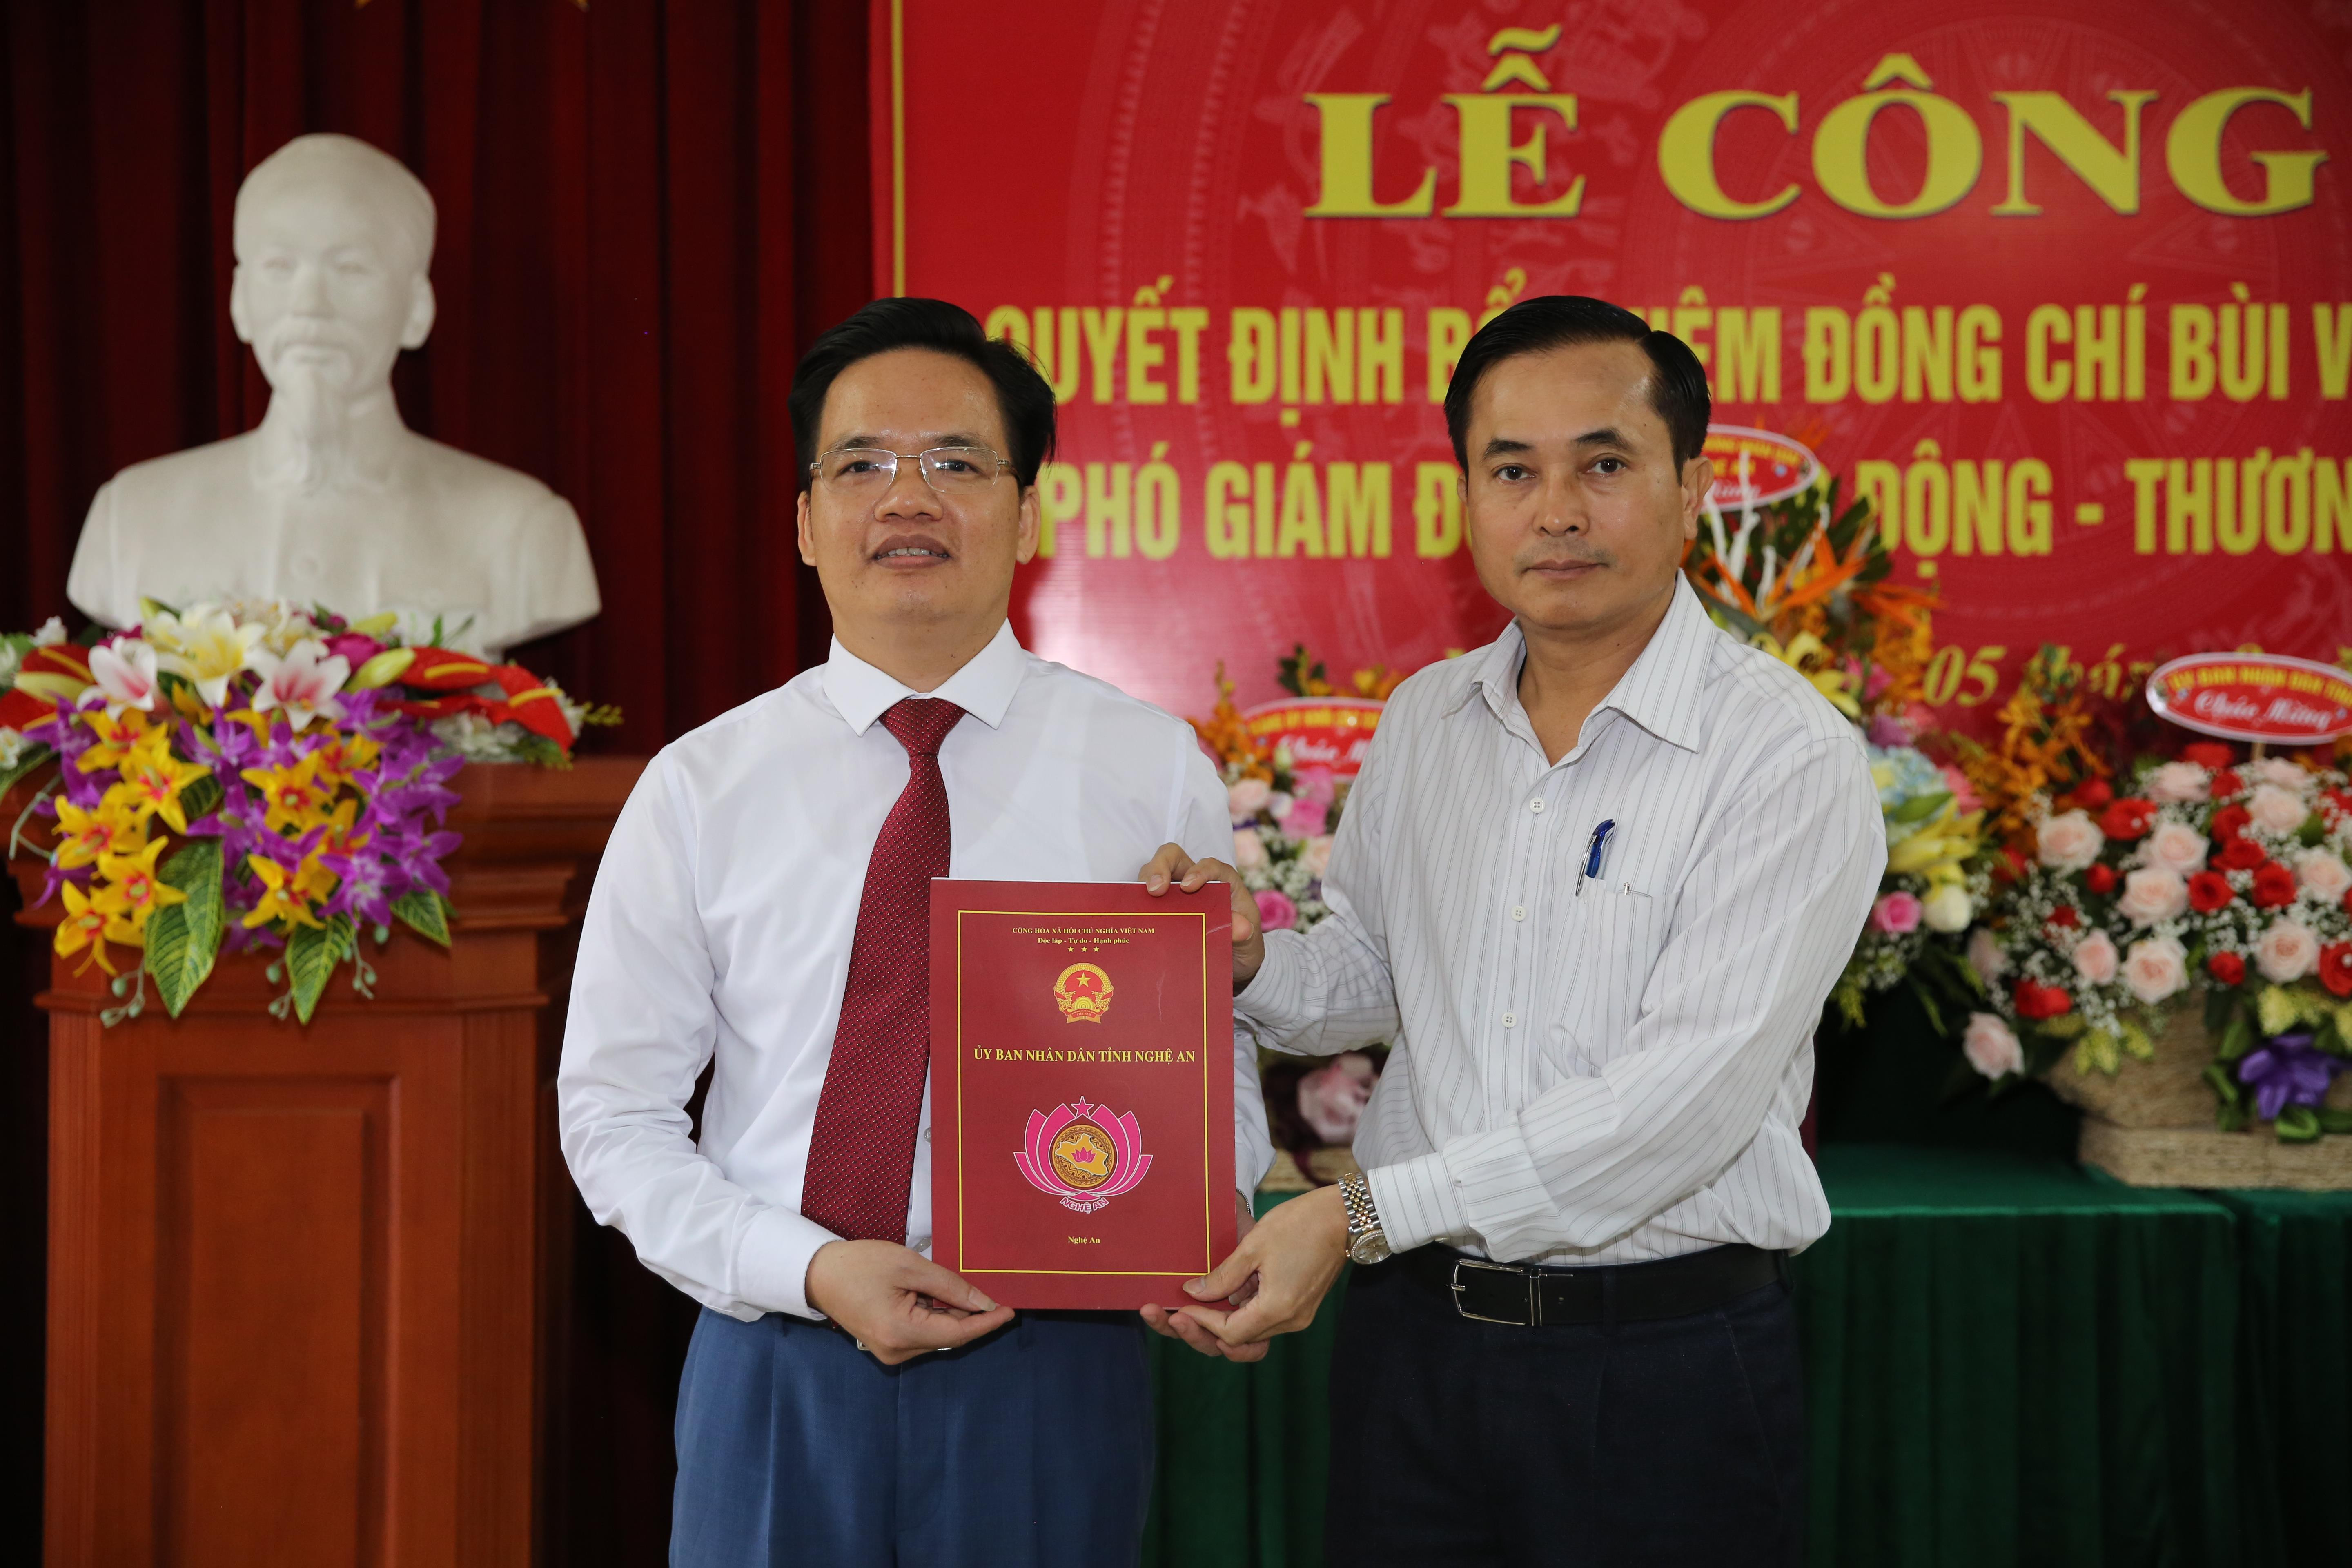  Phó Chủ tịch UBND tỉnh trao quyết định bổ nhiệm giữ chức Phó Giám đốc Sở Lao động Thương binh & Xã hội cho đồng chí Bùi Văn Hưng.